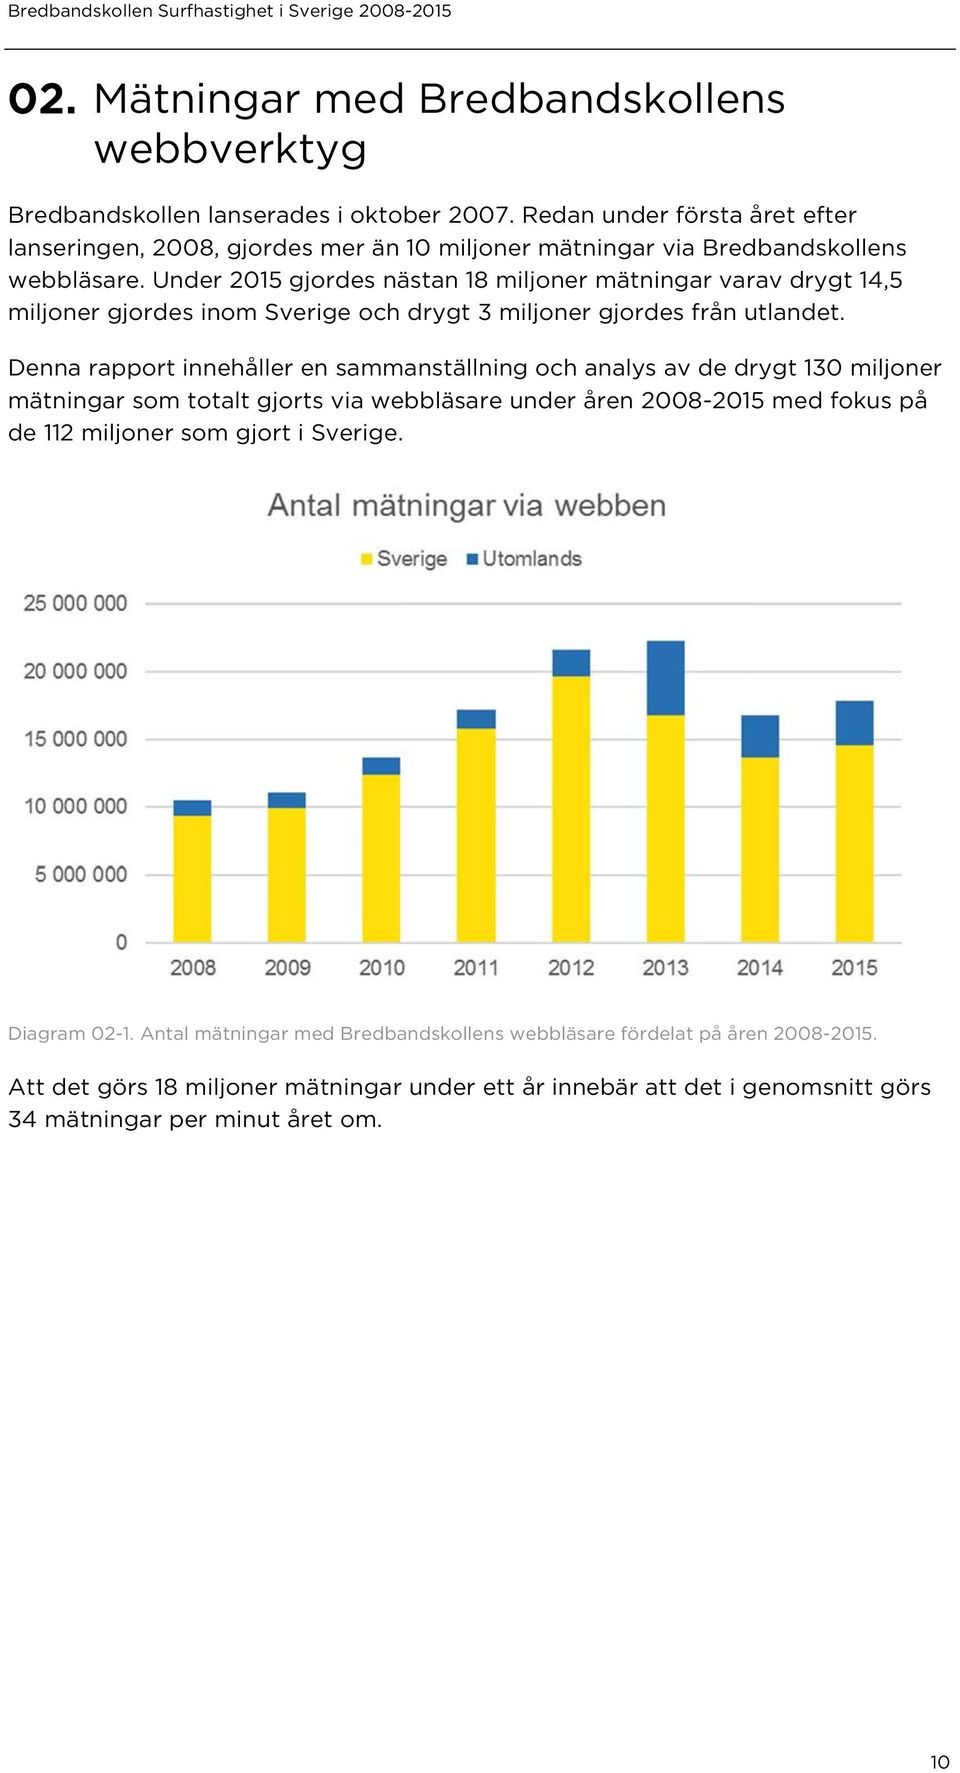 Under 2015 gjordes nästan 18 miljoner mätningar varav drygt 14,5 miljoner gjordes inom Sverige och drygt 3 miljoner gjordes från utlandet.